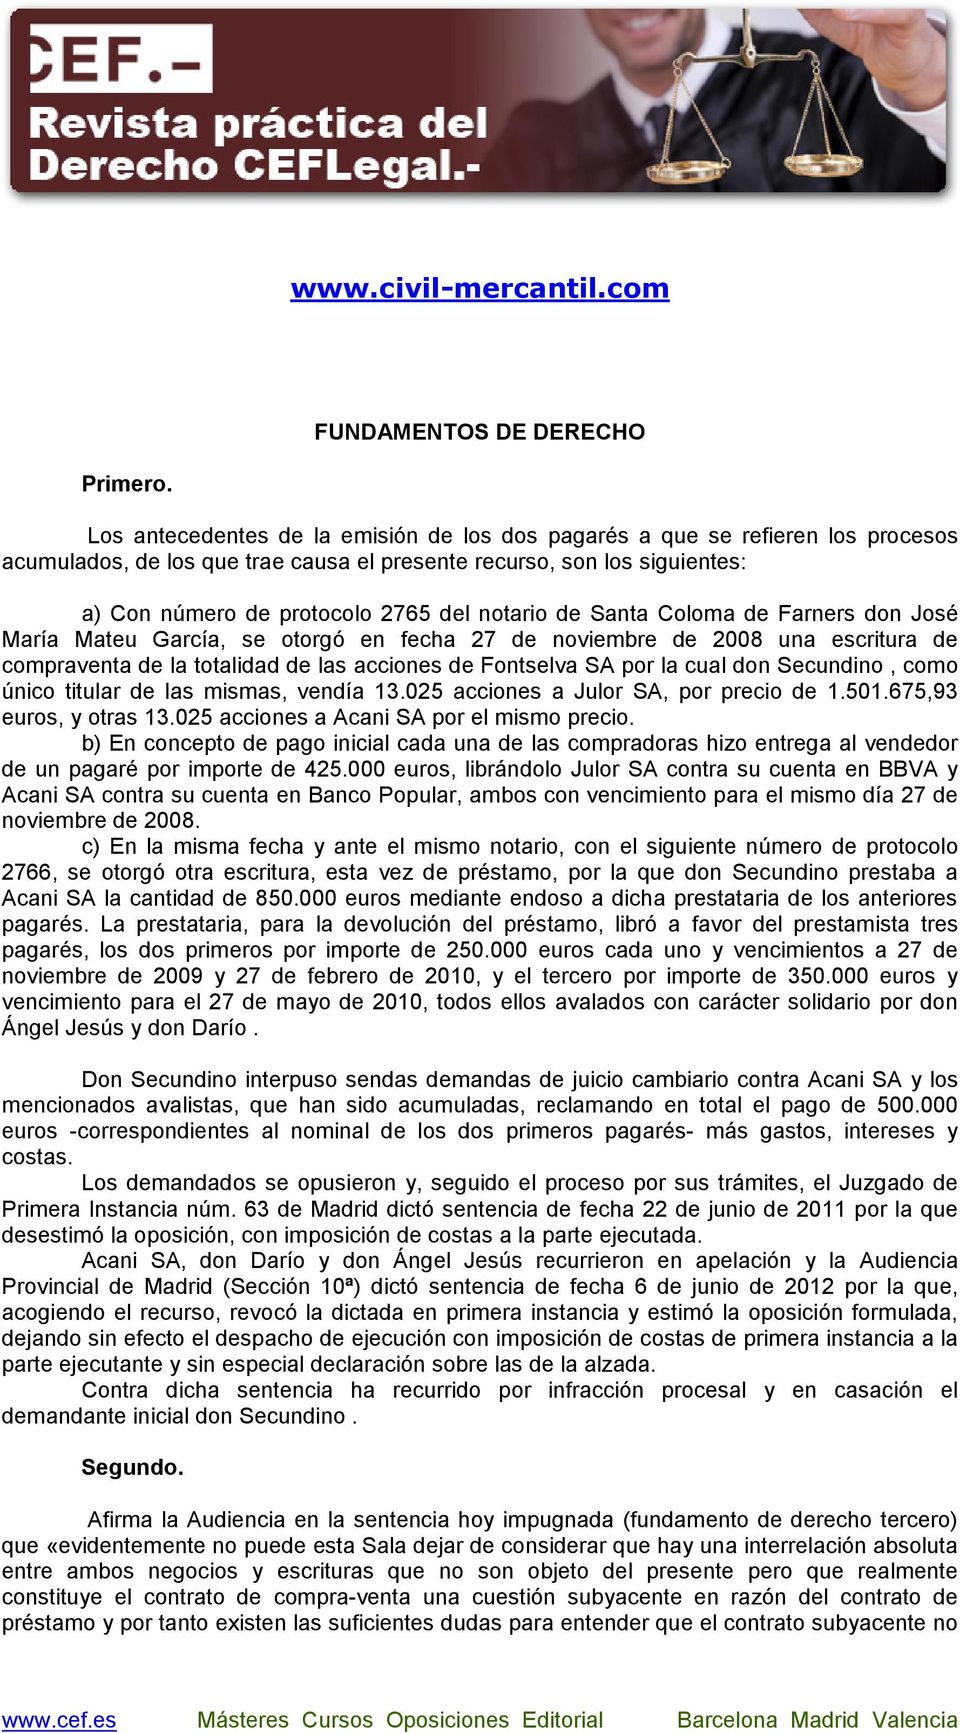 de Santa Coloma de Farners don José María Mateu García, se otorgó en fecha 27 de noviembre de 2008 una escritura de compraventa de la totalidad de las acciones de Fontselva SA por la cual don